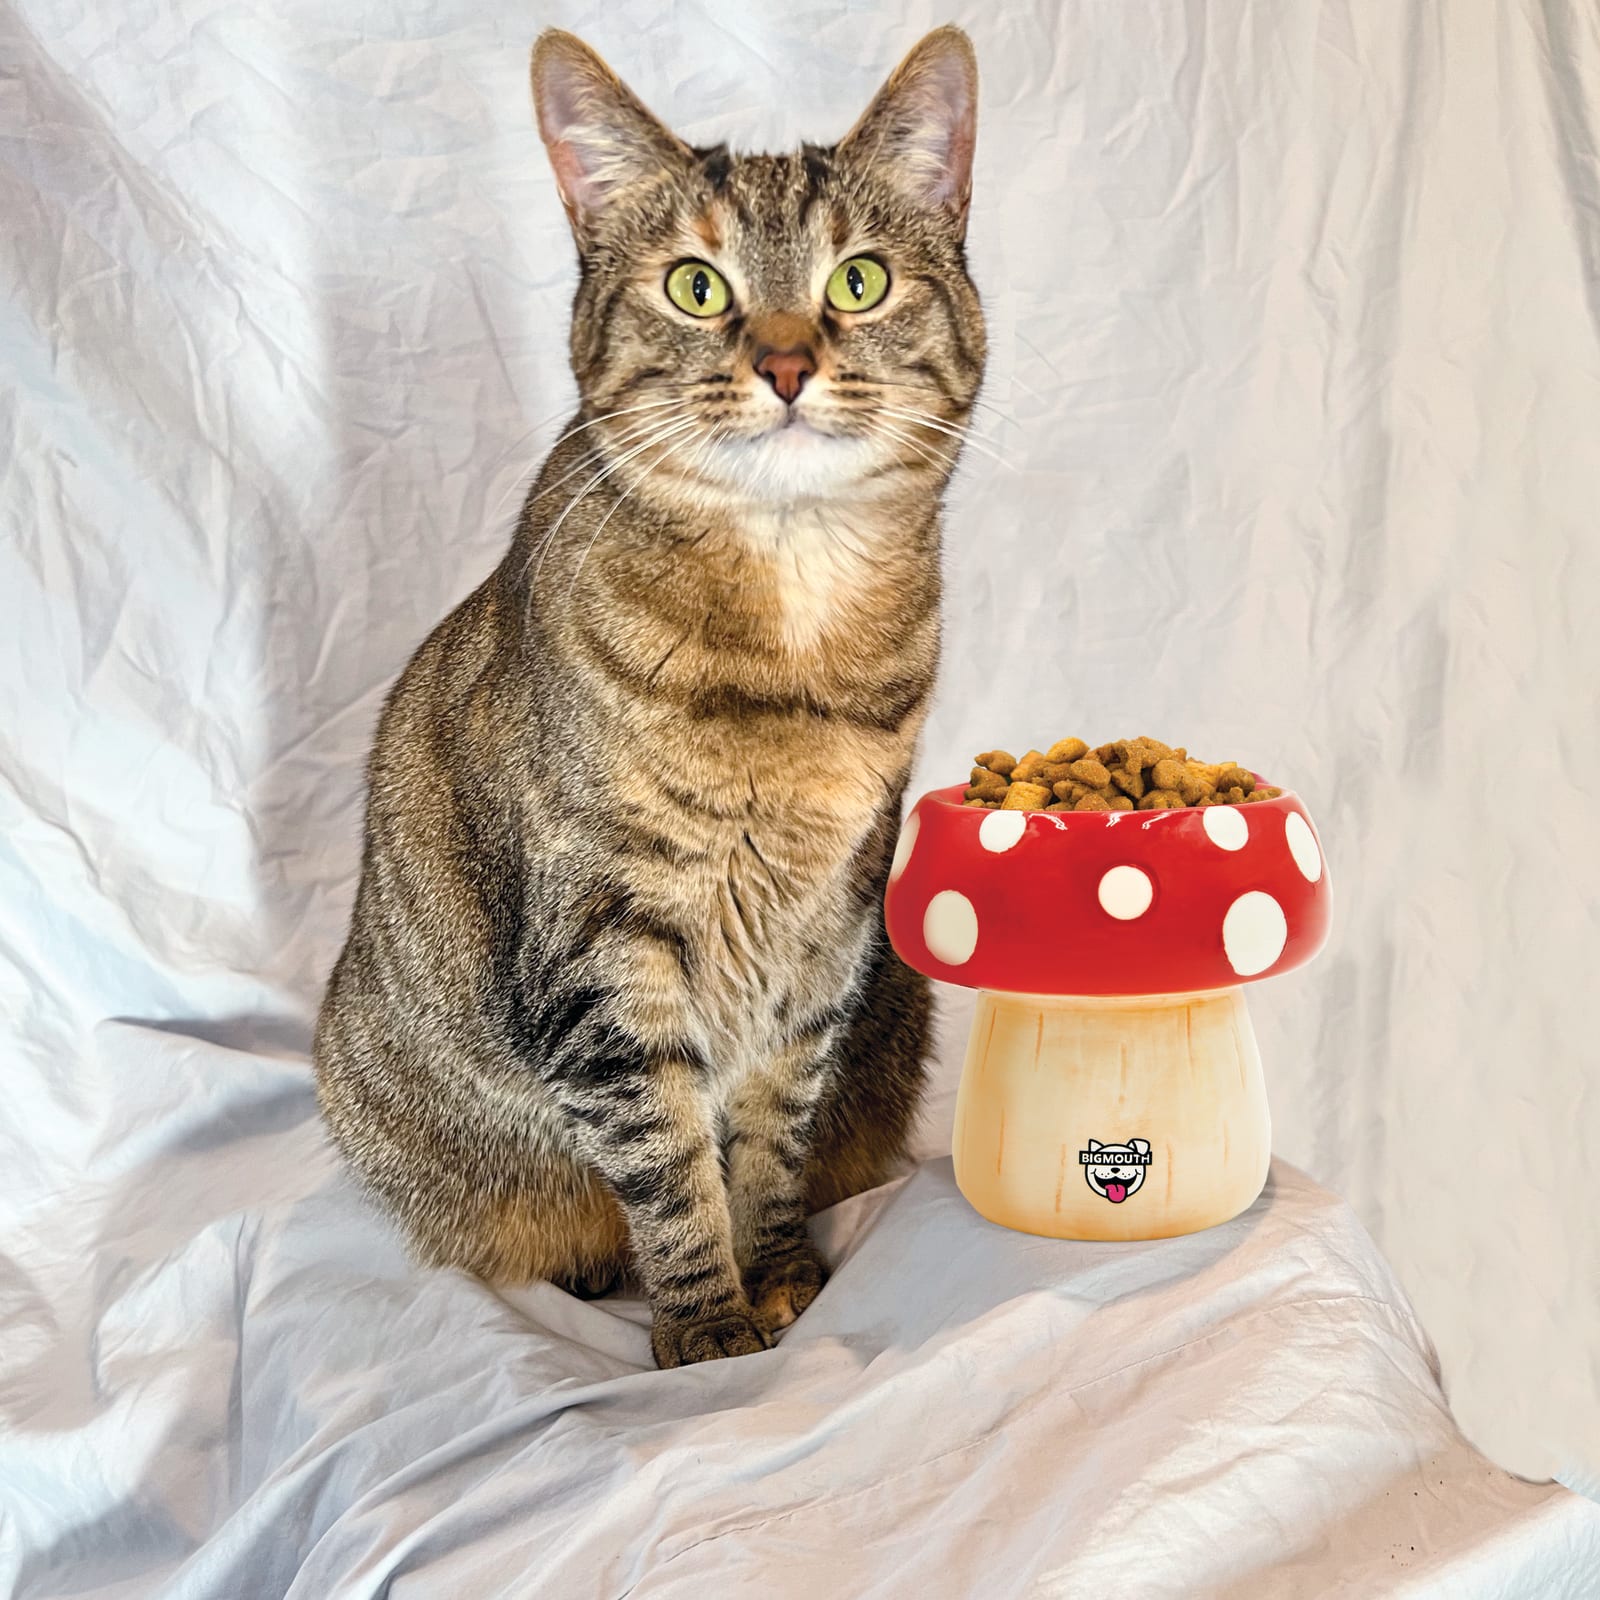 BigMouth 'Shroom' Cat and Dog Bowl